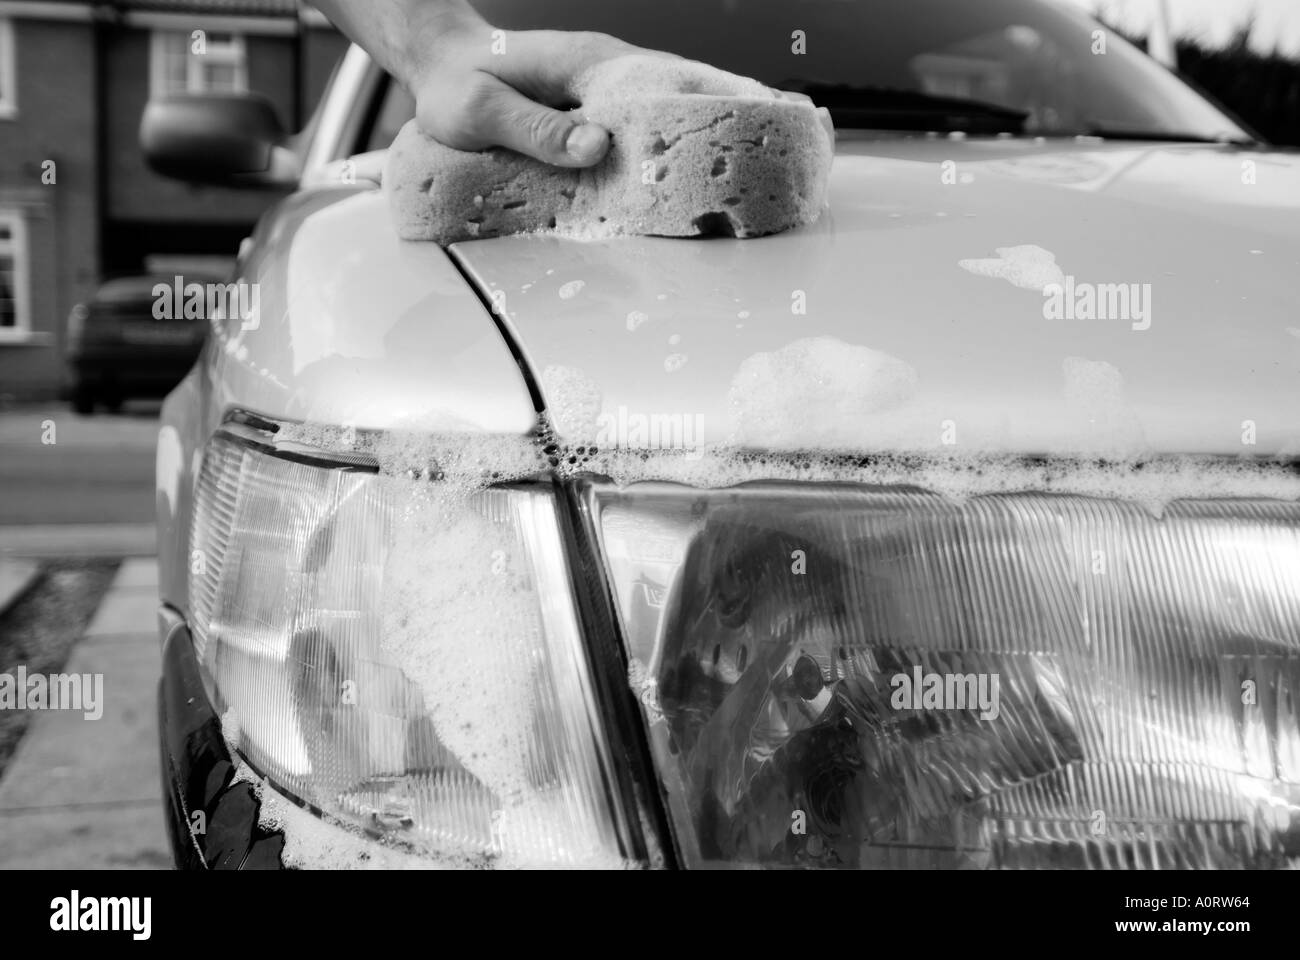 Lavage de voiture propre lavage savonneuse polonais de l'eau savonneuse sale saleté route benne voiture Banque D'Images